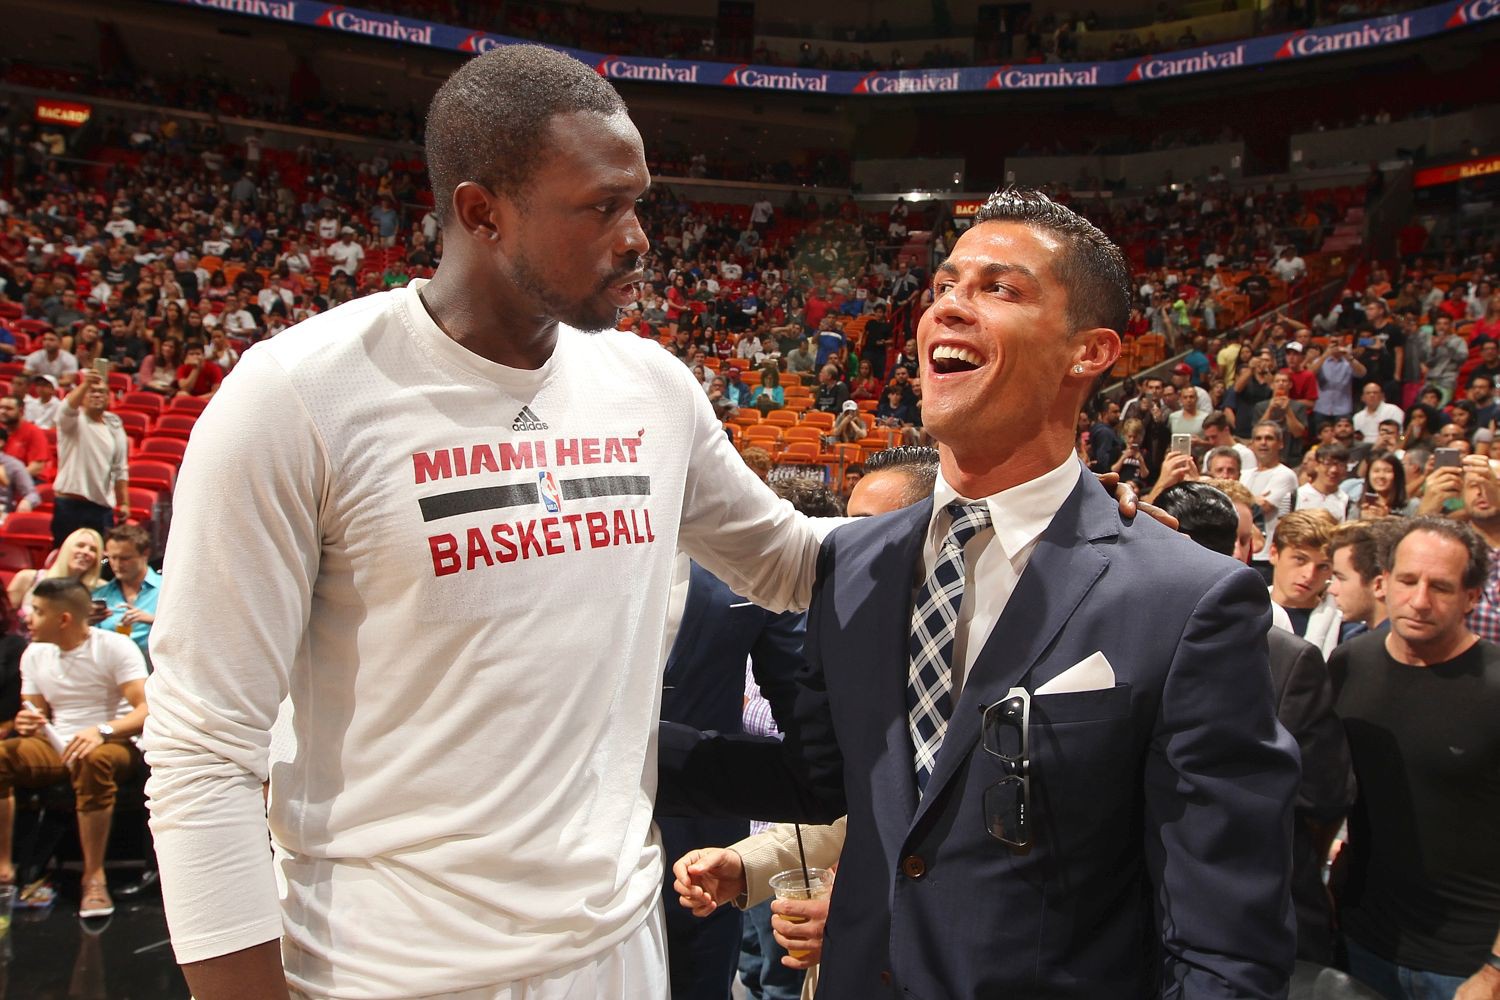 Ngôi sao Real Madrid cười khoái chí với ngôi sao bóng rổ LuolDeng của Miami Heart.